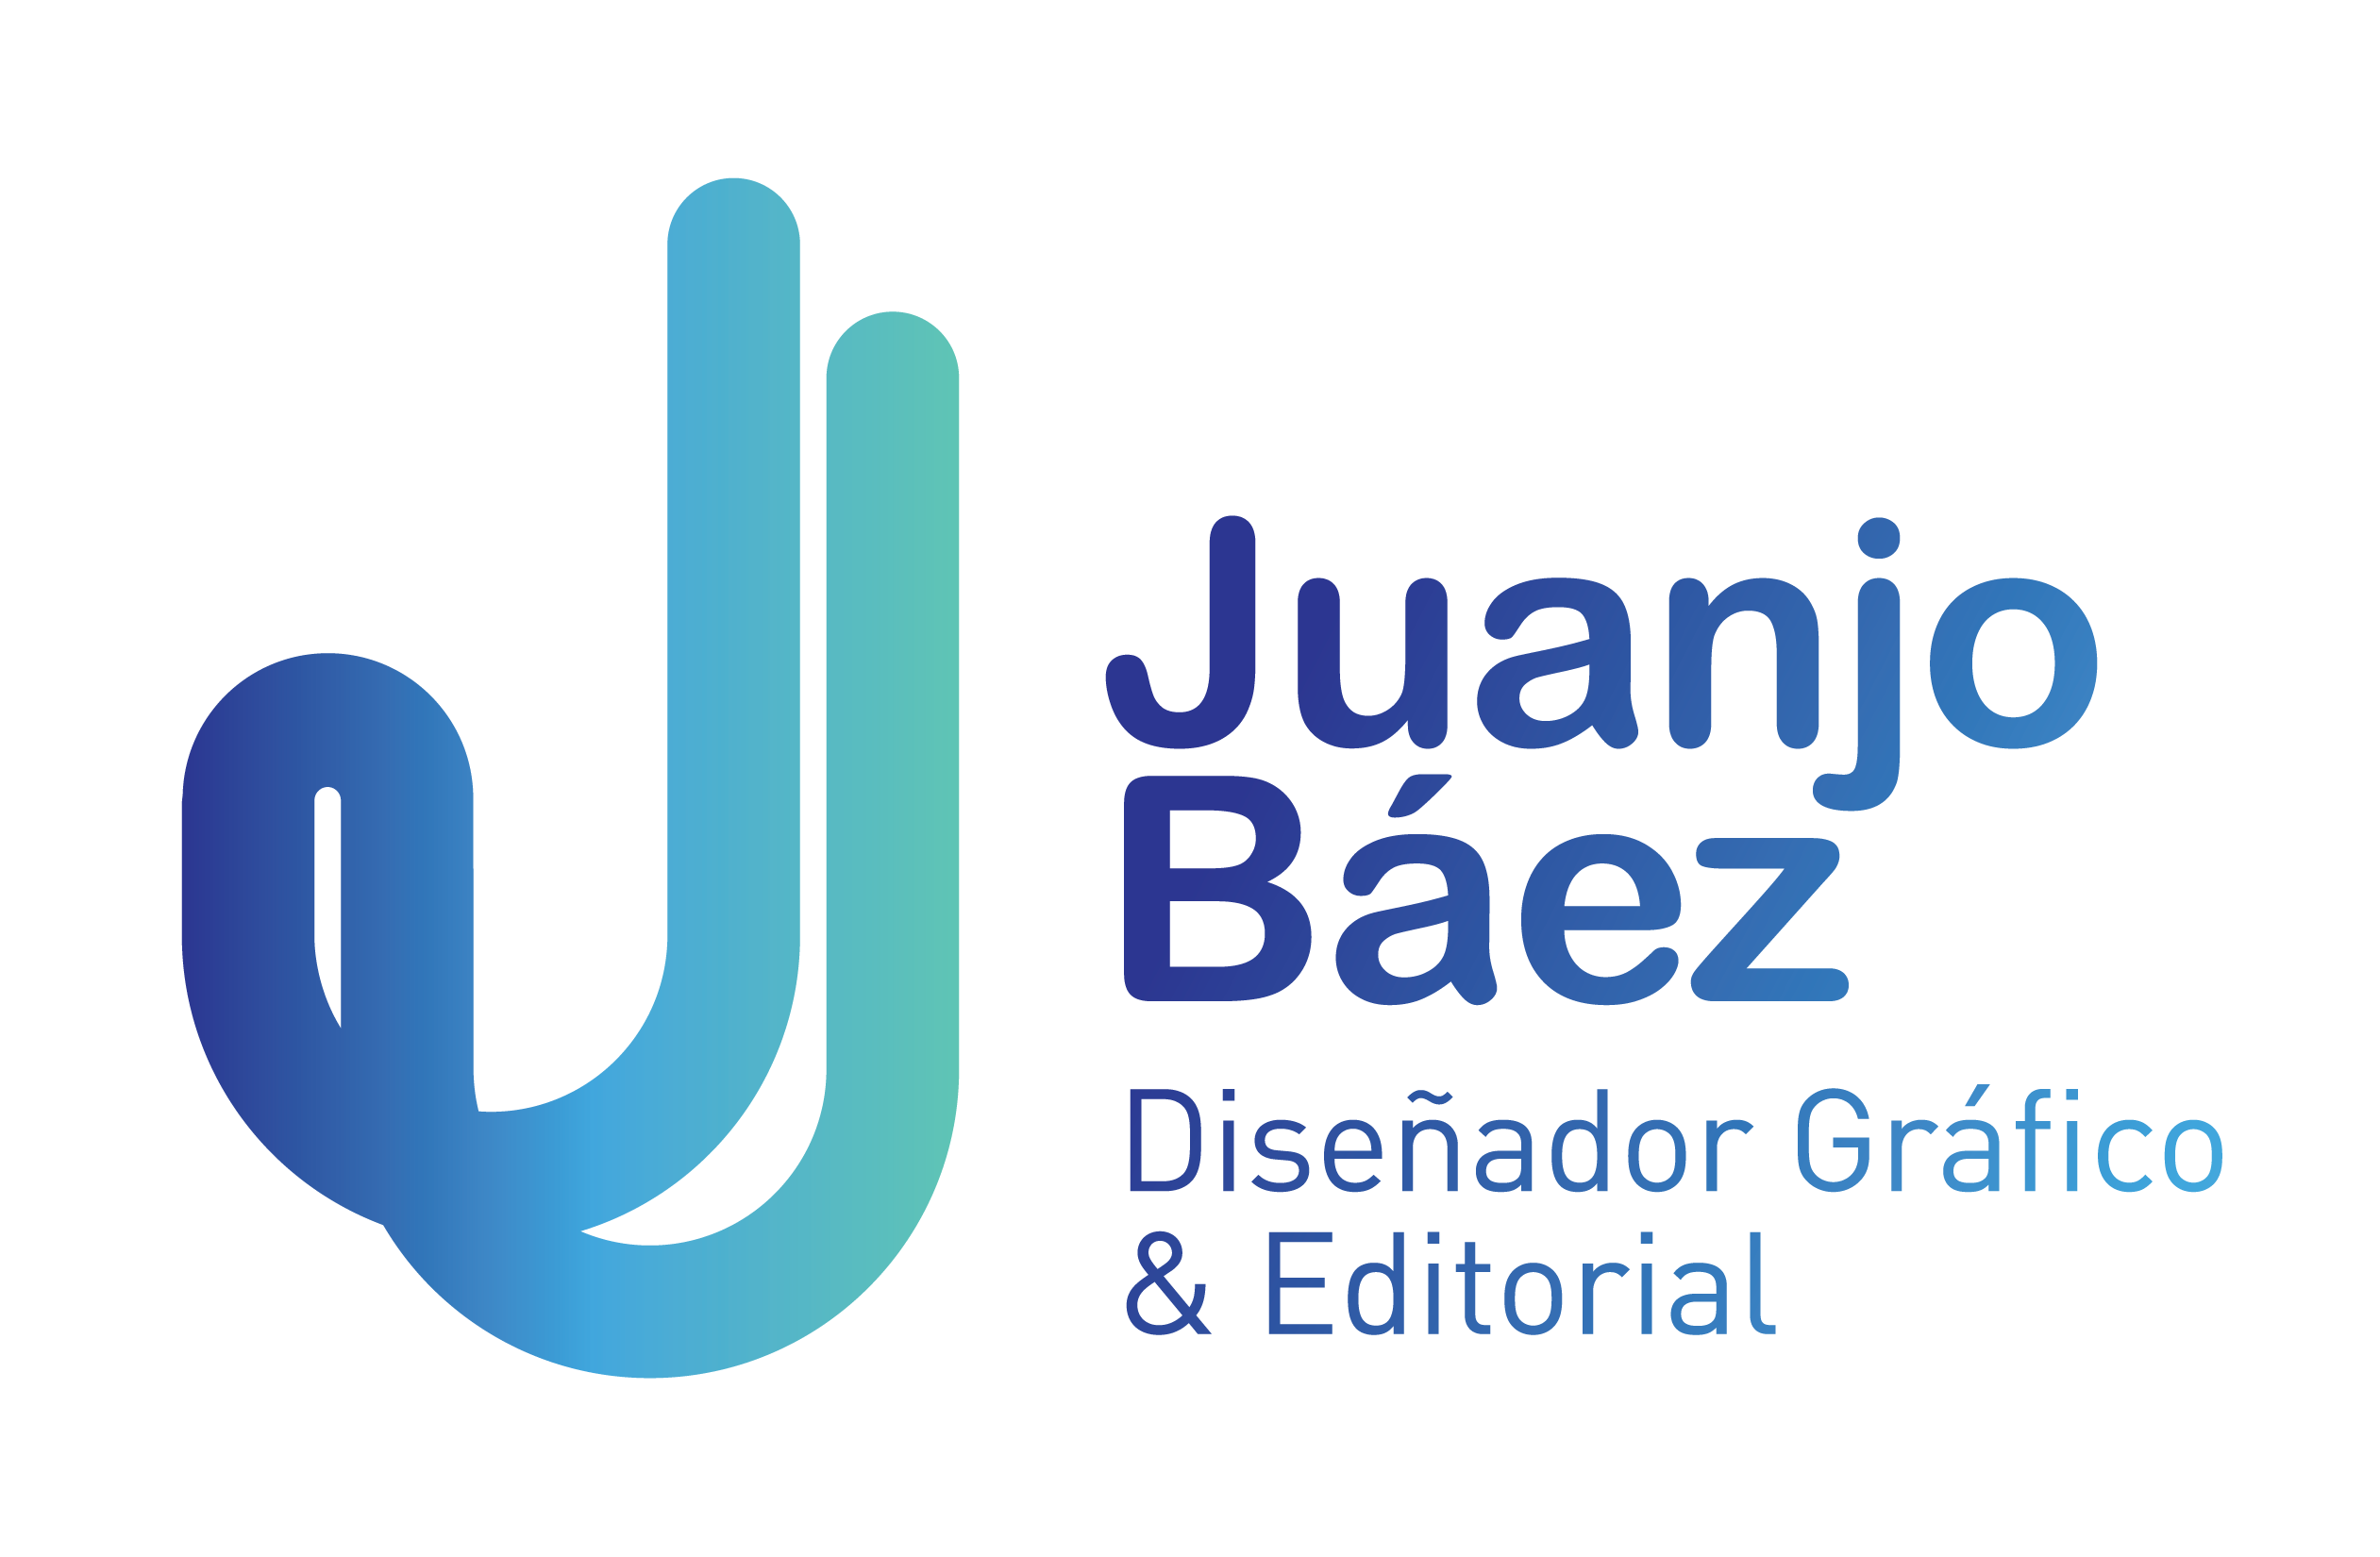 Juan José Báez